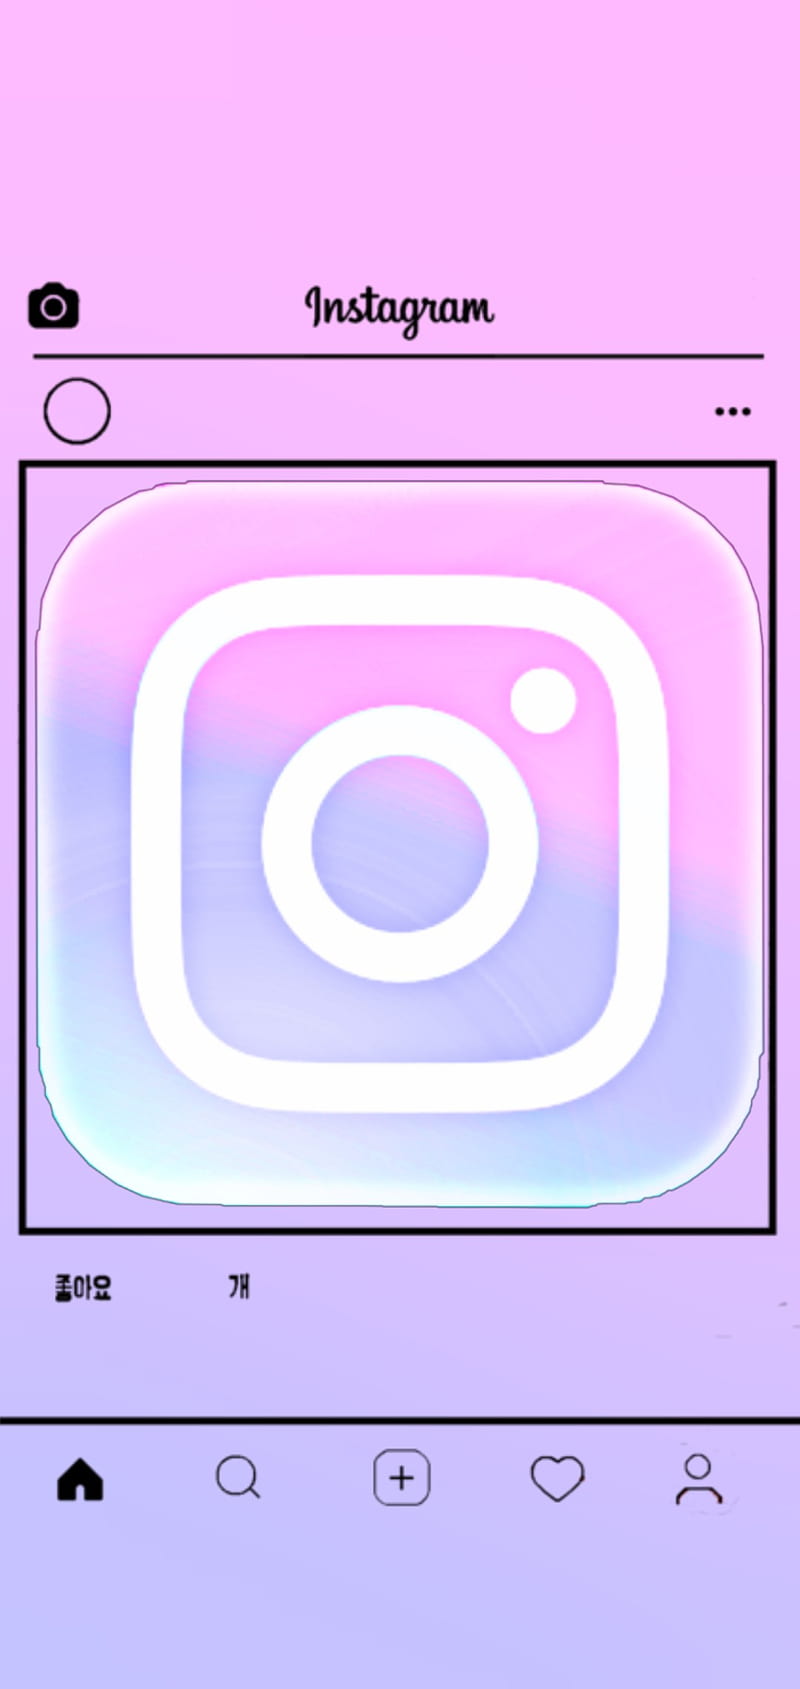 Best Instagram iPhone HD Wallpapers  iLikeWallpaper